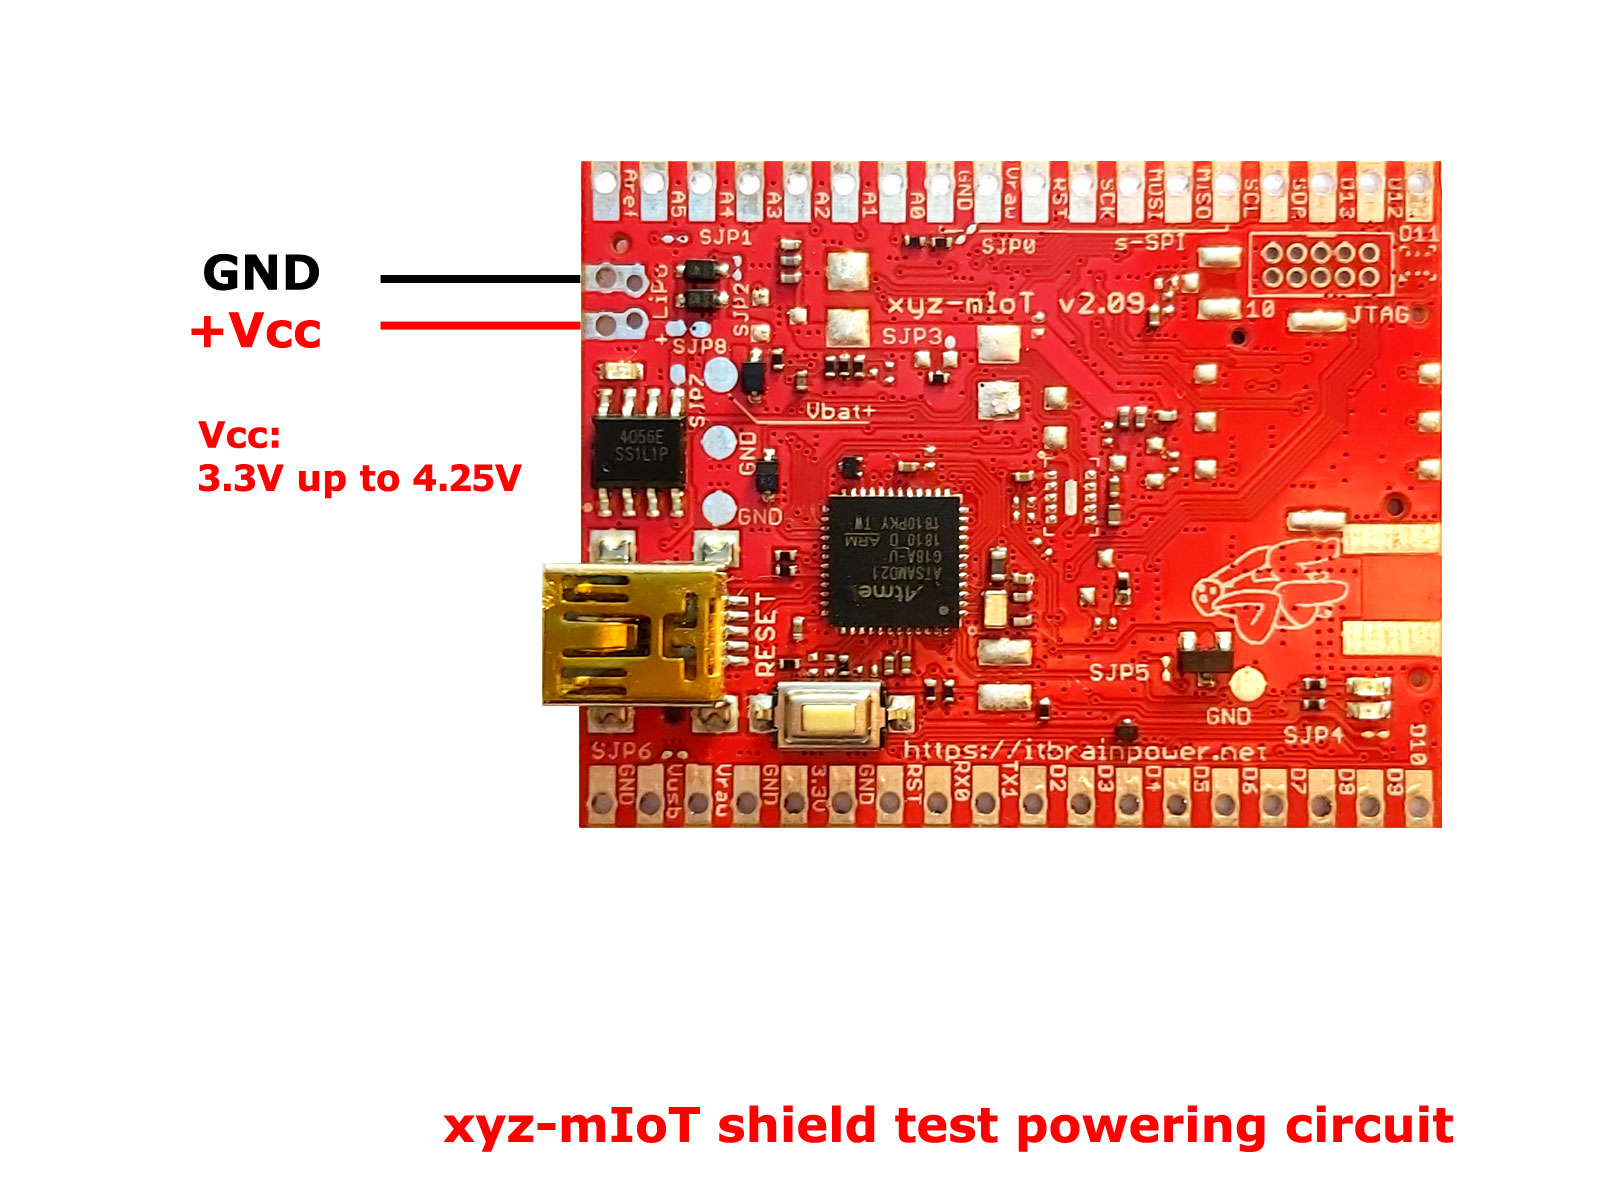 xyz-mIoT shield consumption test circuit